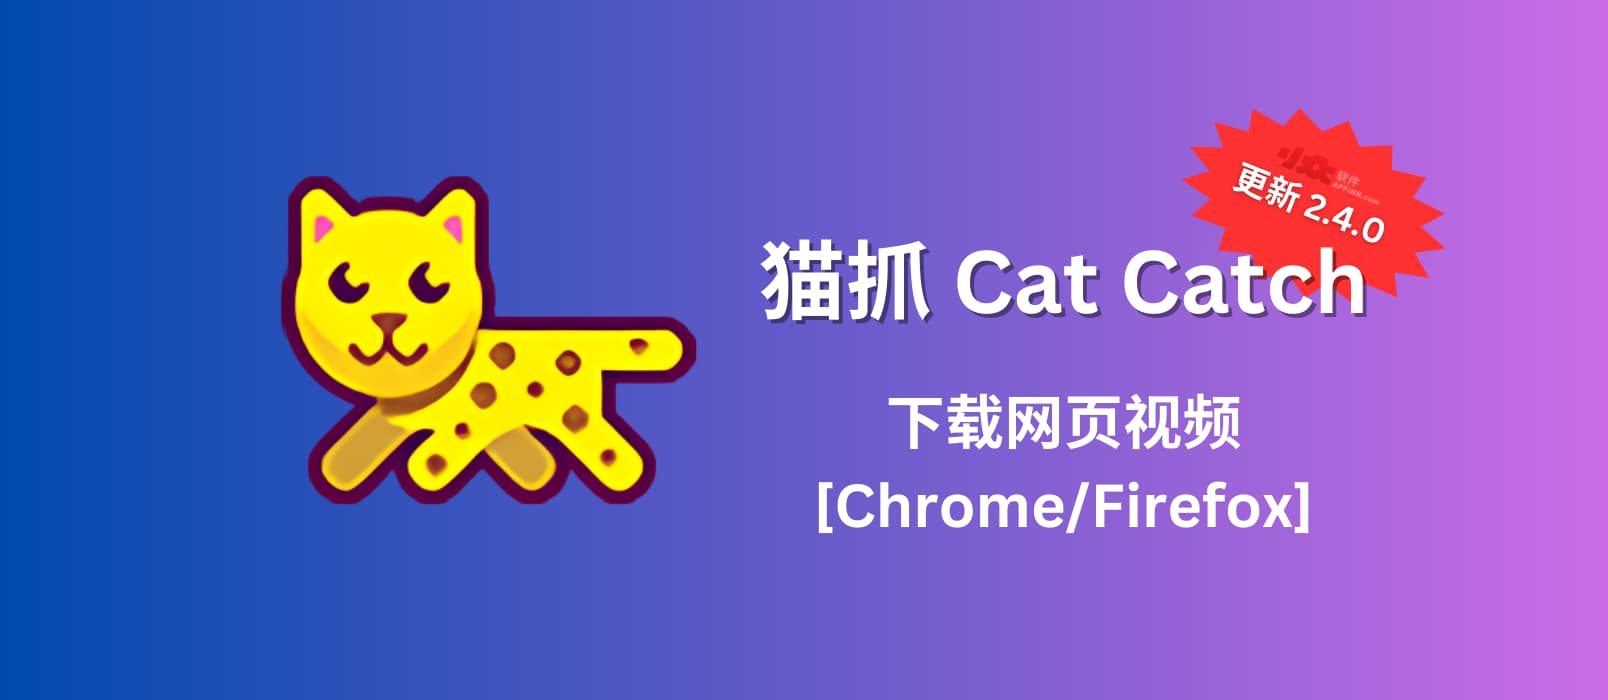 猫抓 Cat Catch 2.4.0 发布，帮你下载网页视频[Chrome/Firefox]